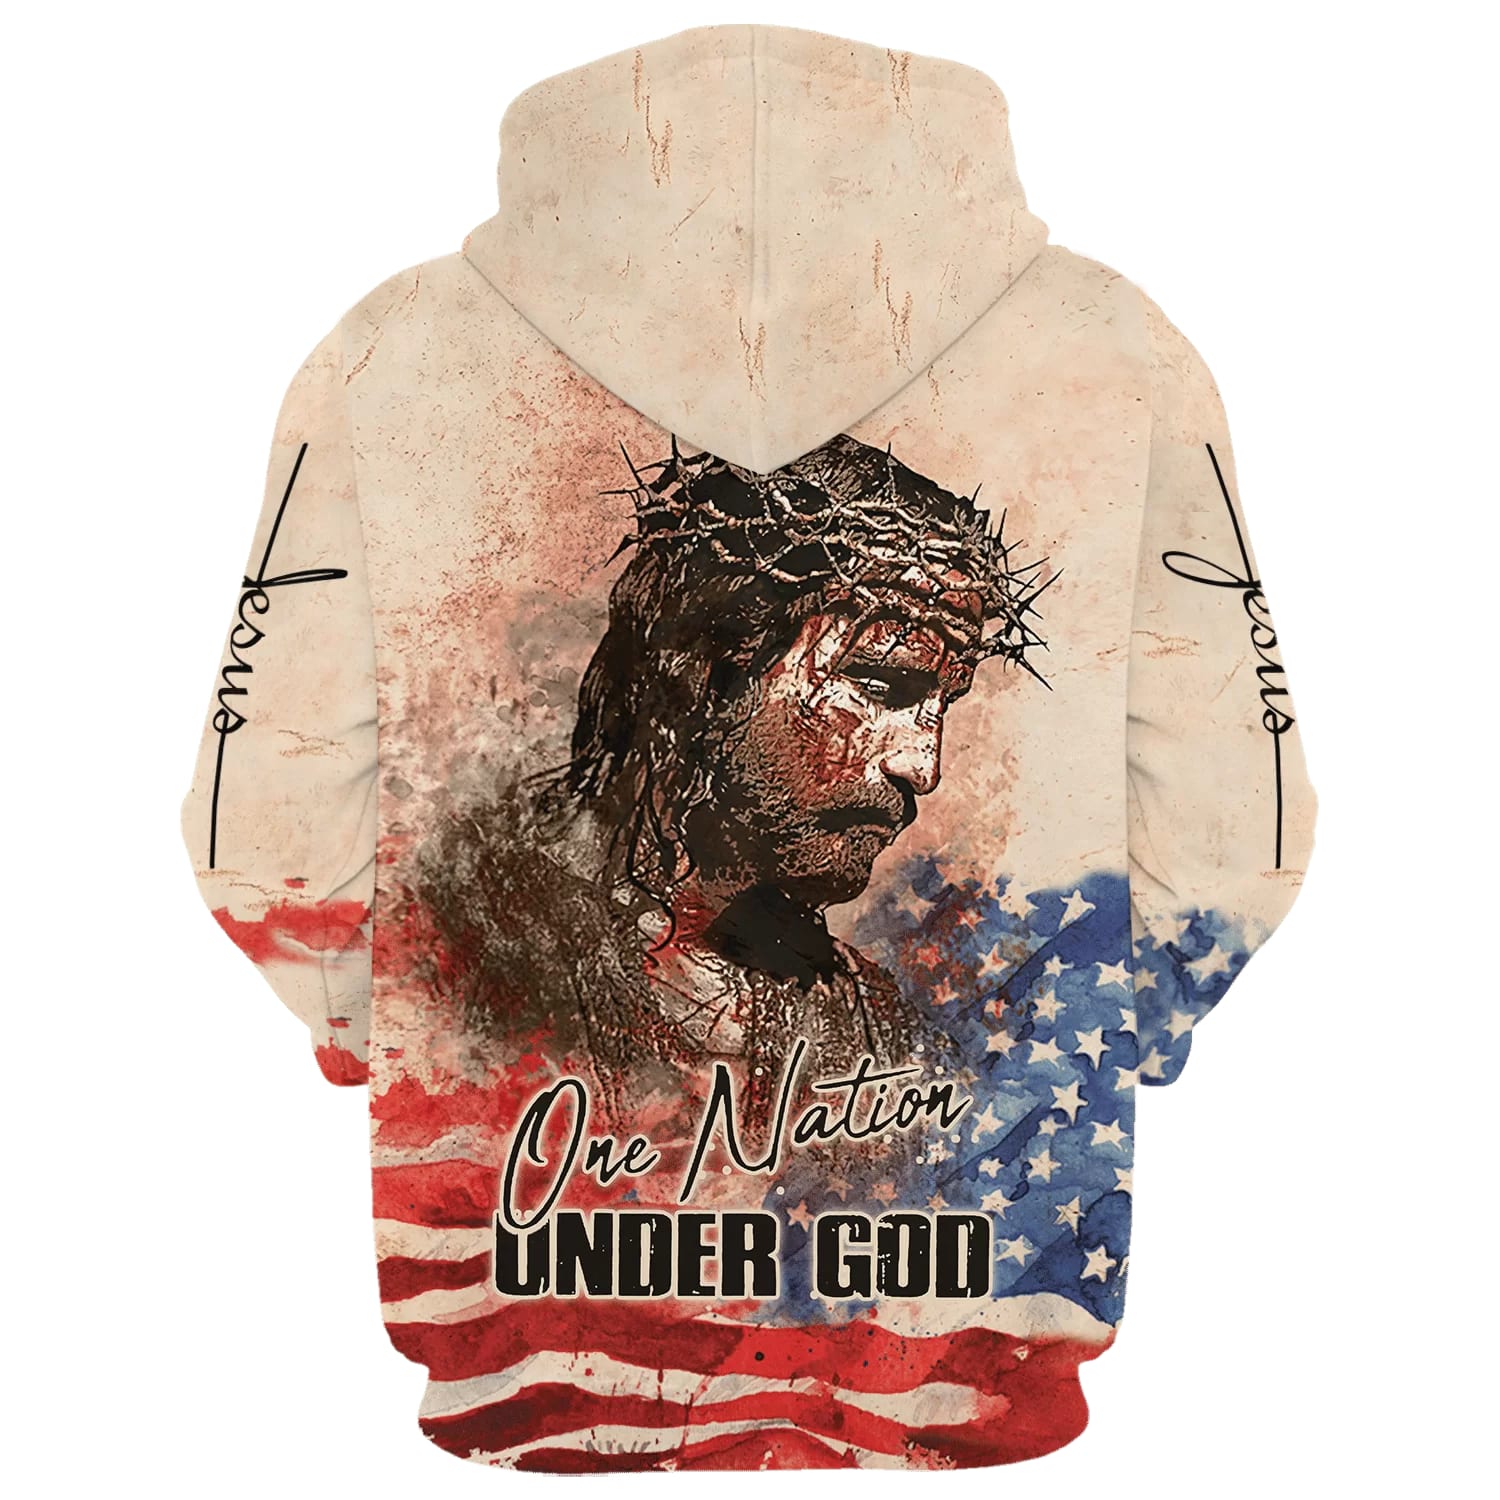 Jesus Christ One Nation Under God Hoodies - Jesus Hoodie - Men & Women Christian Hoodie - 3D Printed Hoodie